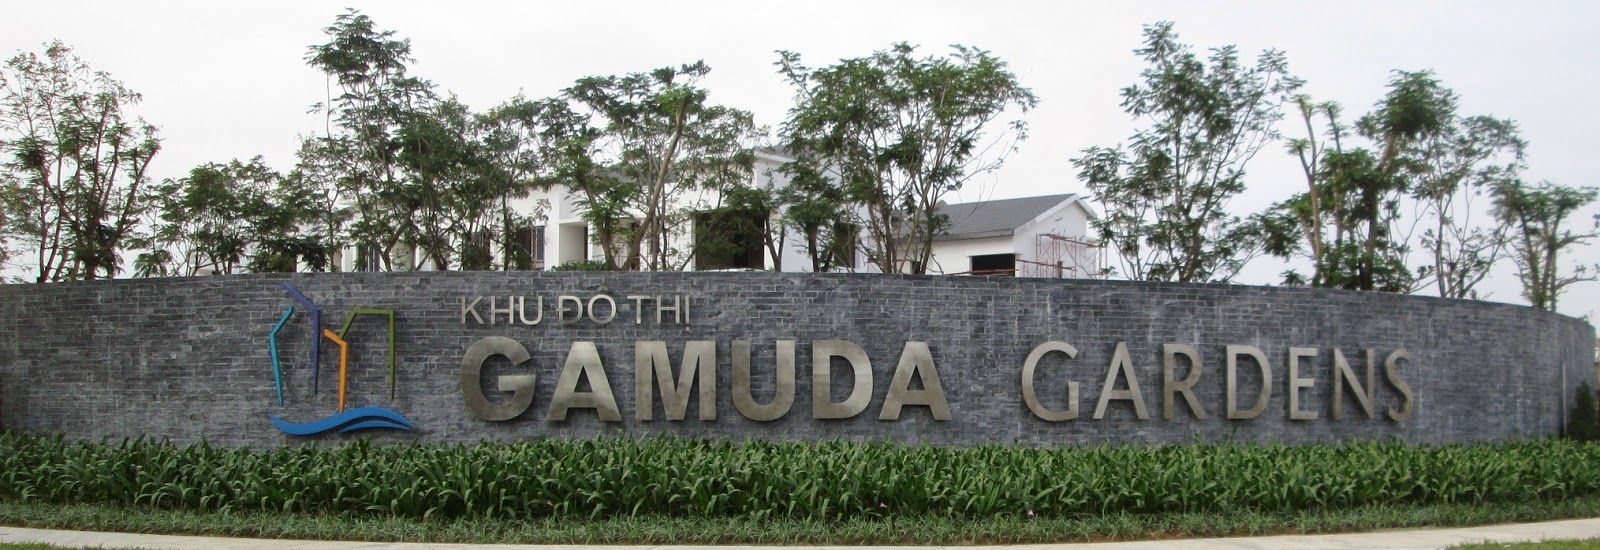  Bất Động Sản Miền Bắc - Gamuda Gardens